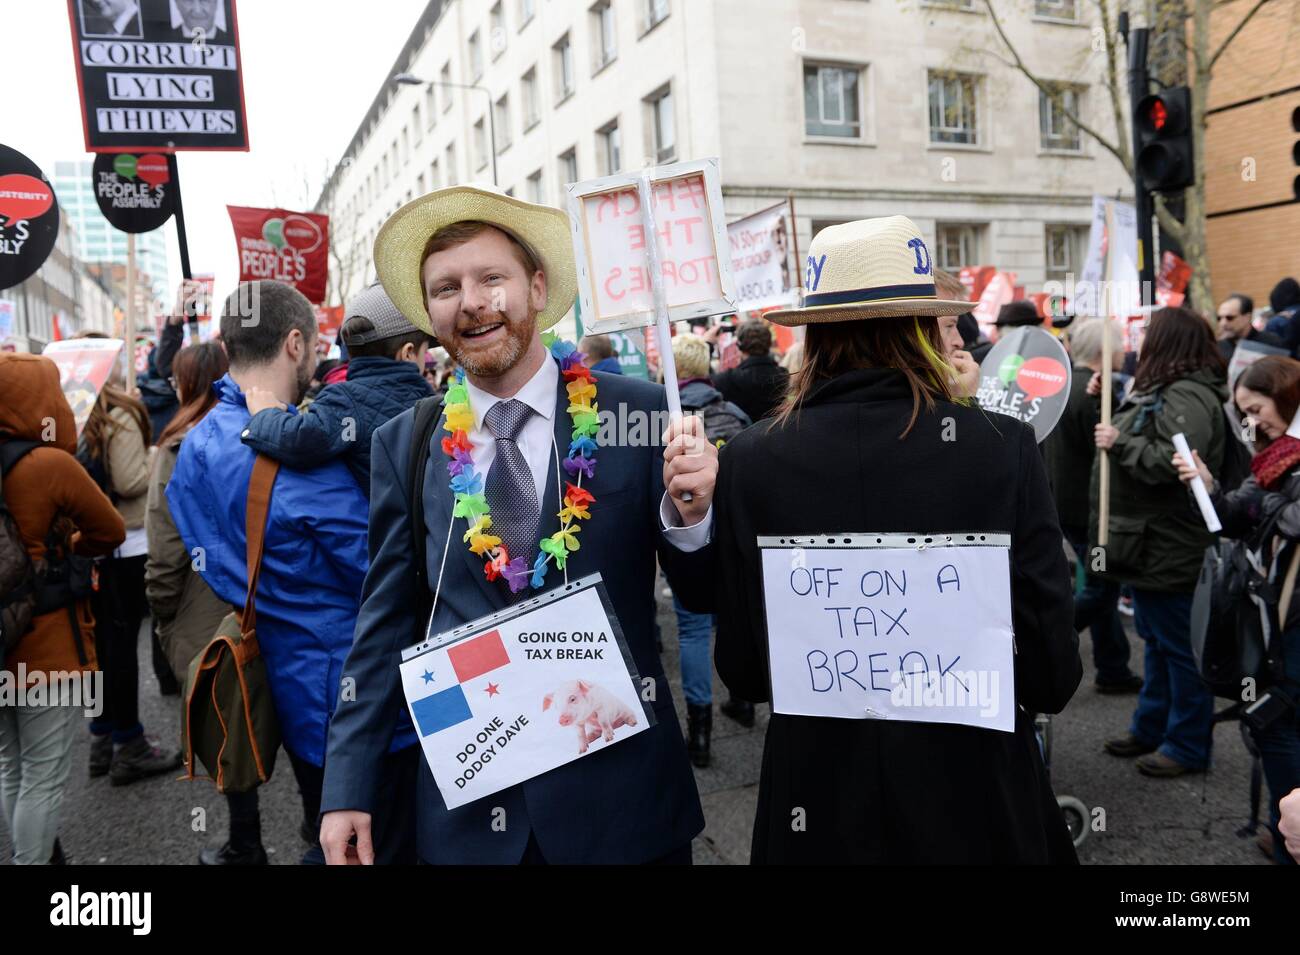 Les militants manifestent dans une manifestation anti-austérité dans le centre de Londres. Banque D'Images